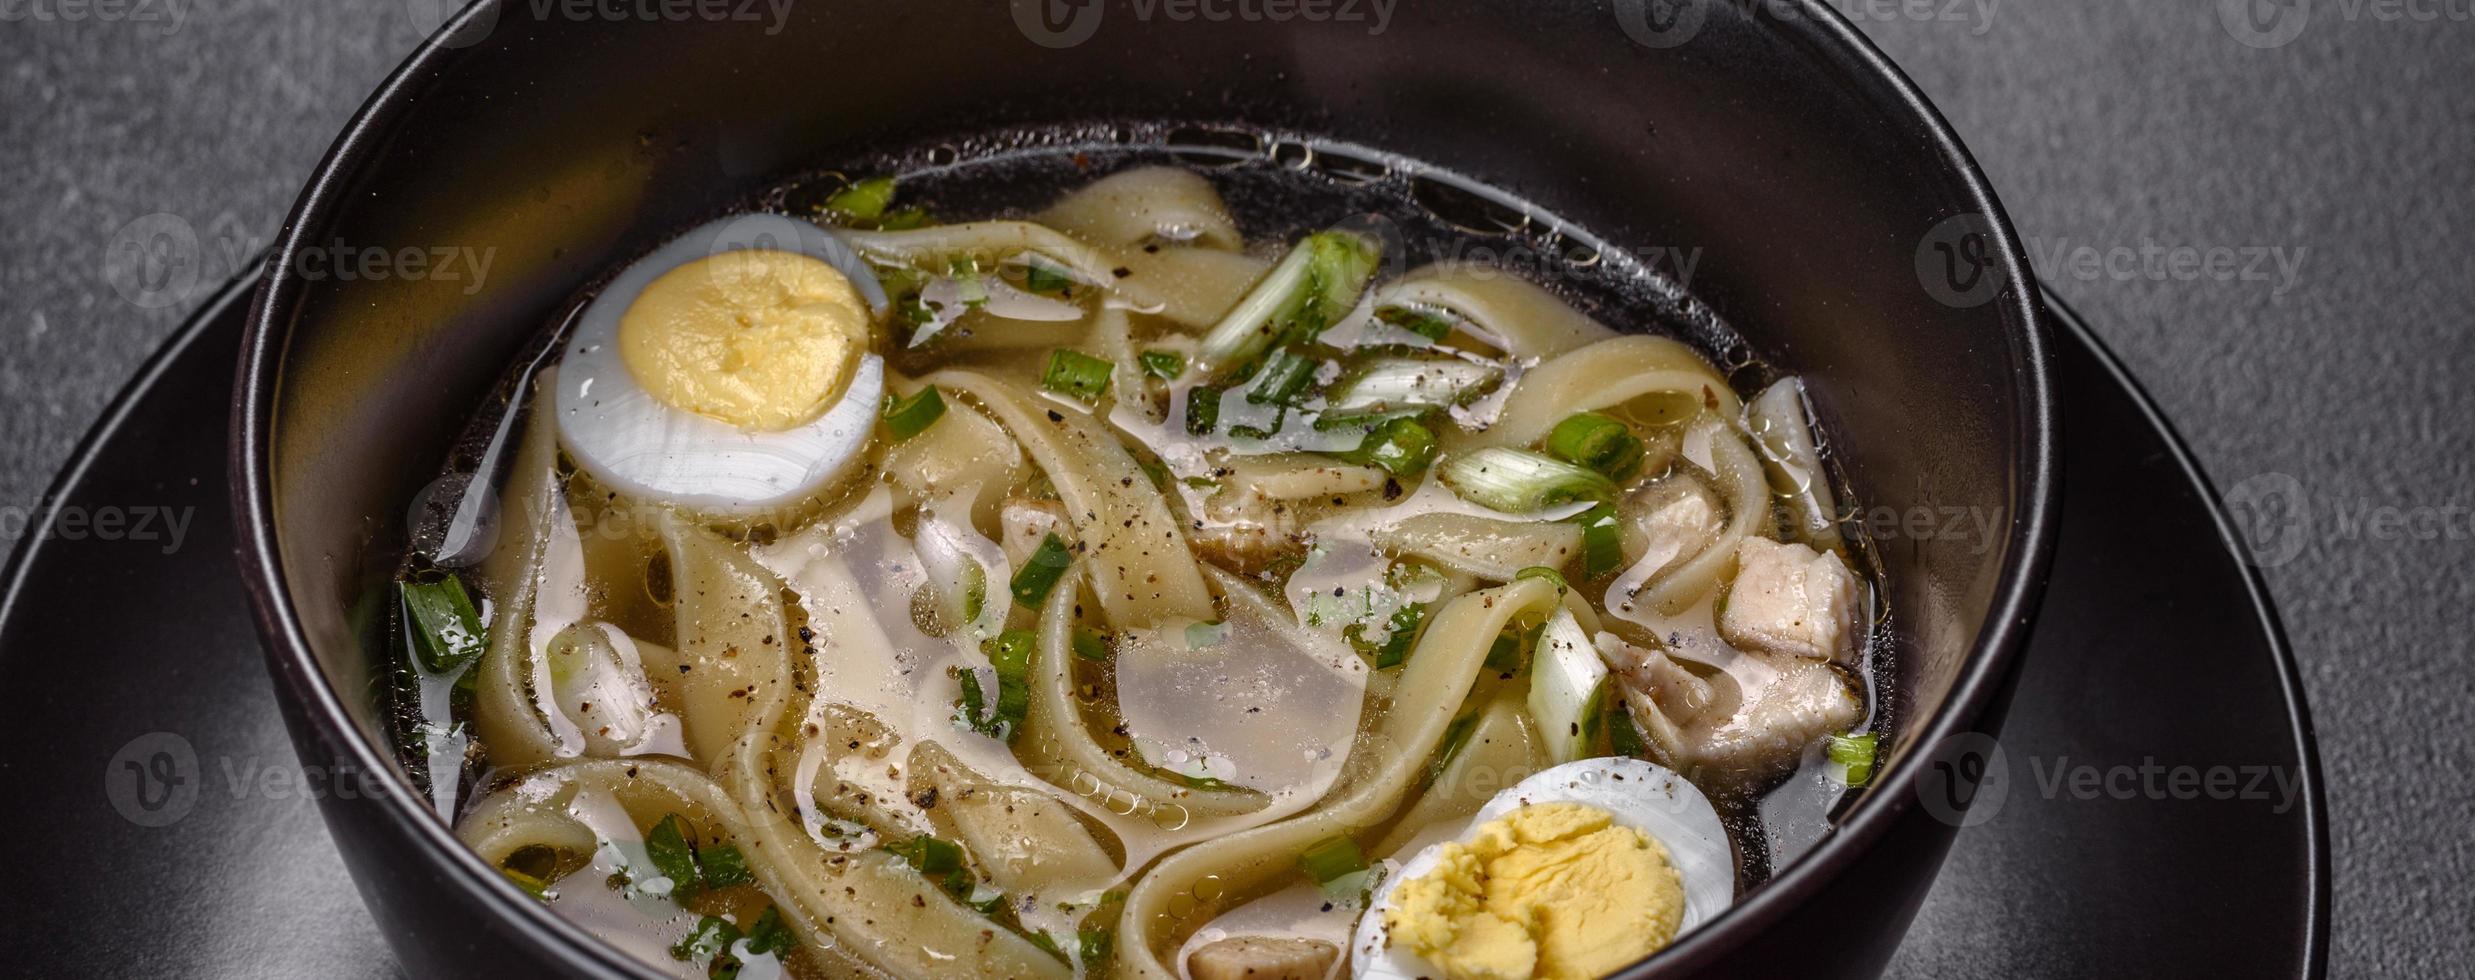 zuppa calda deliziosa fresca con pasta e uova di quaglia in un piatto nero foto